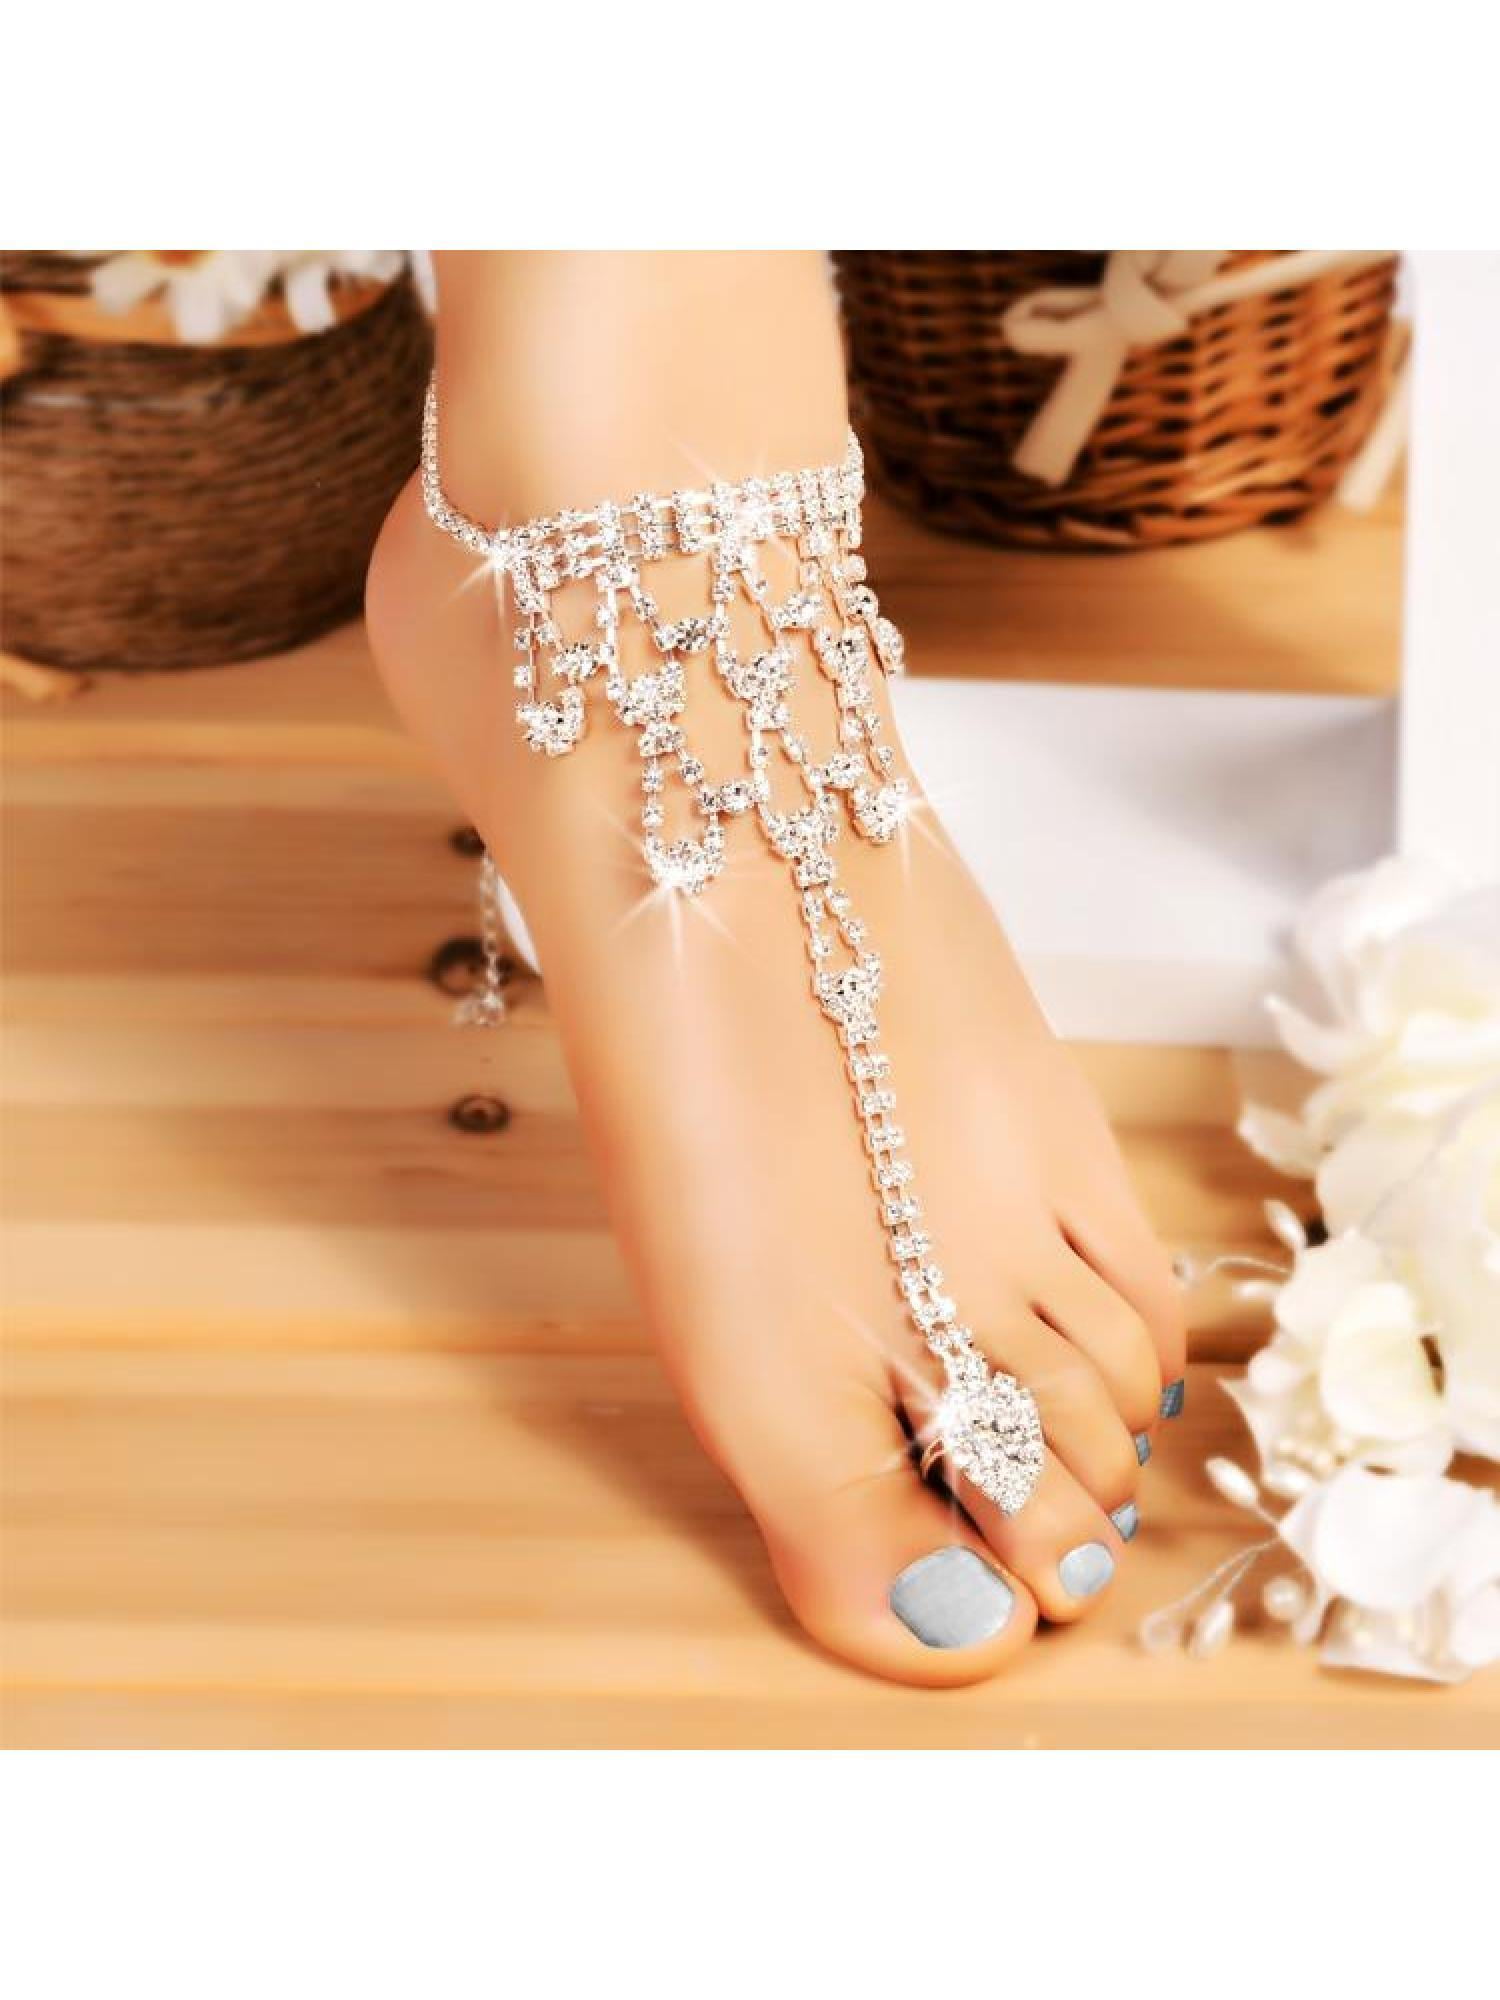 Coin Barefoot Sandal Anklet Foot Chain Toe Ring Beach Ankle Bracelet For Women 